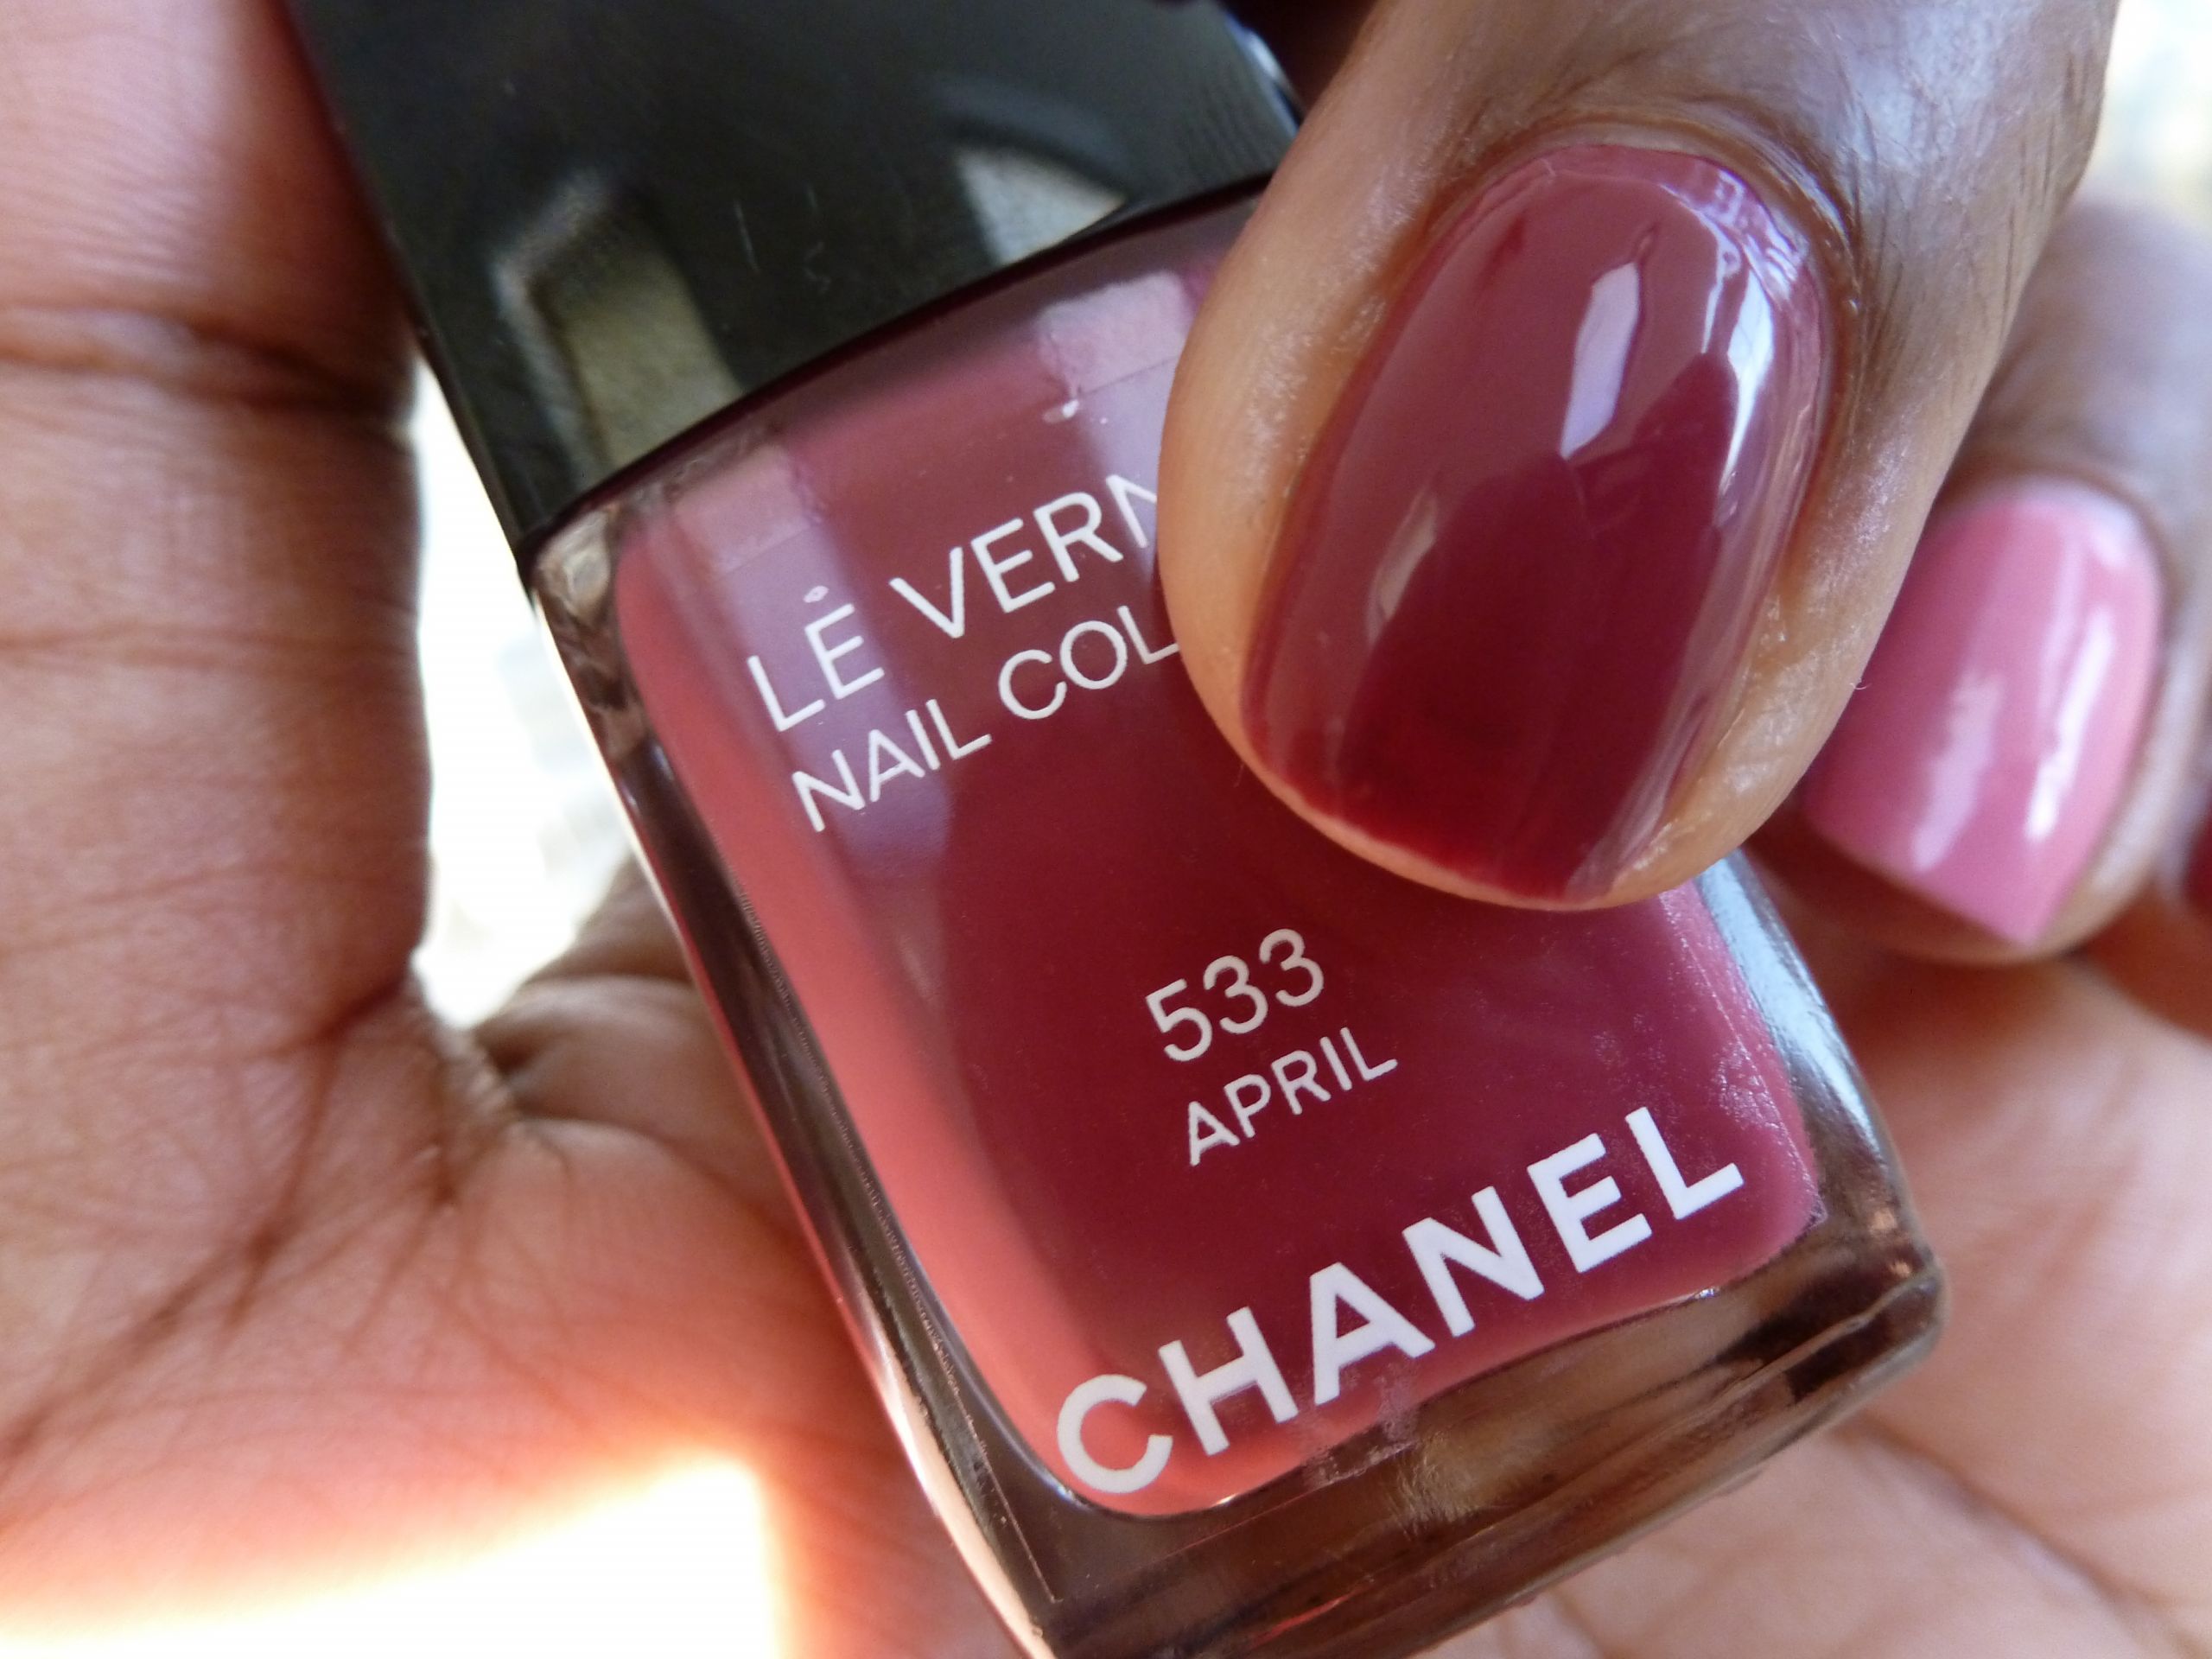 May Nail Colors
 Chanel Spring 2012 Nail Colors April and May